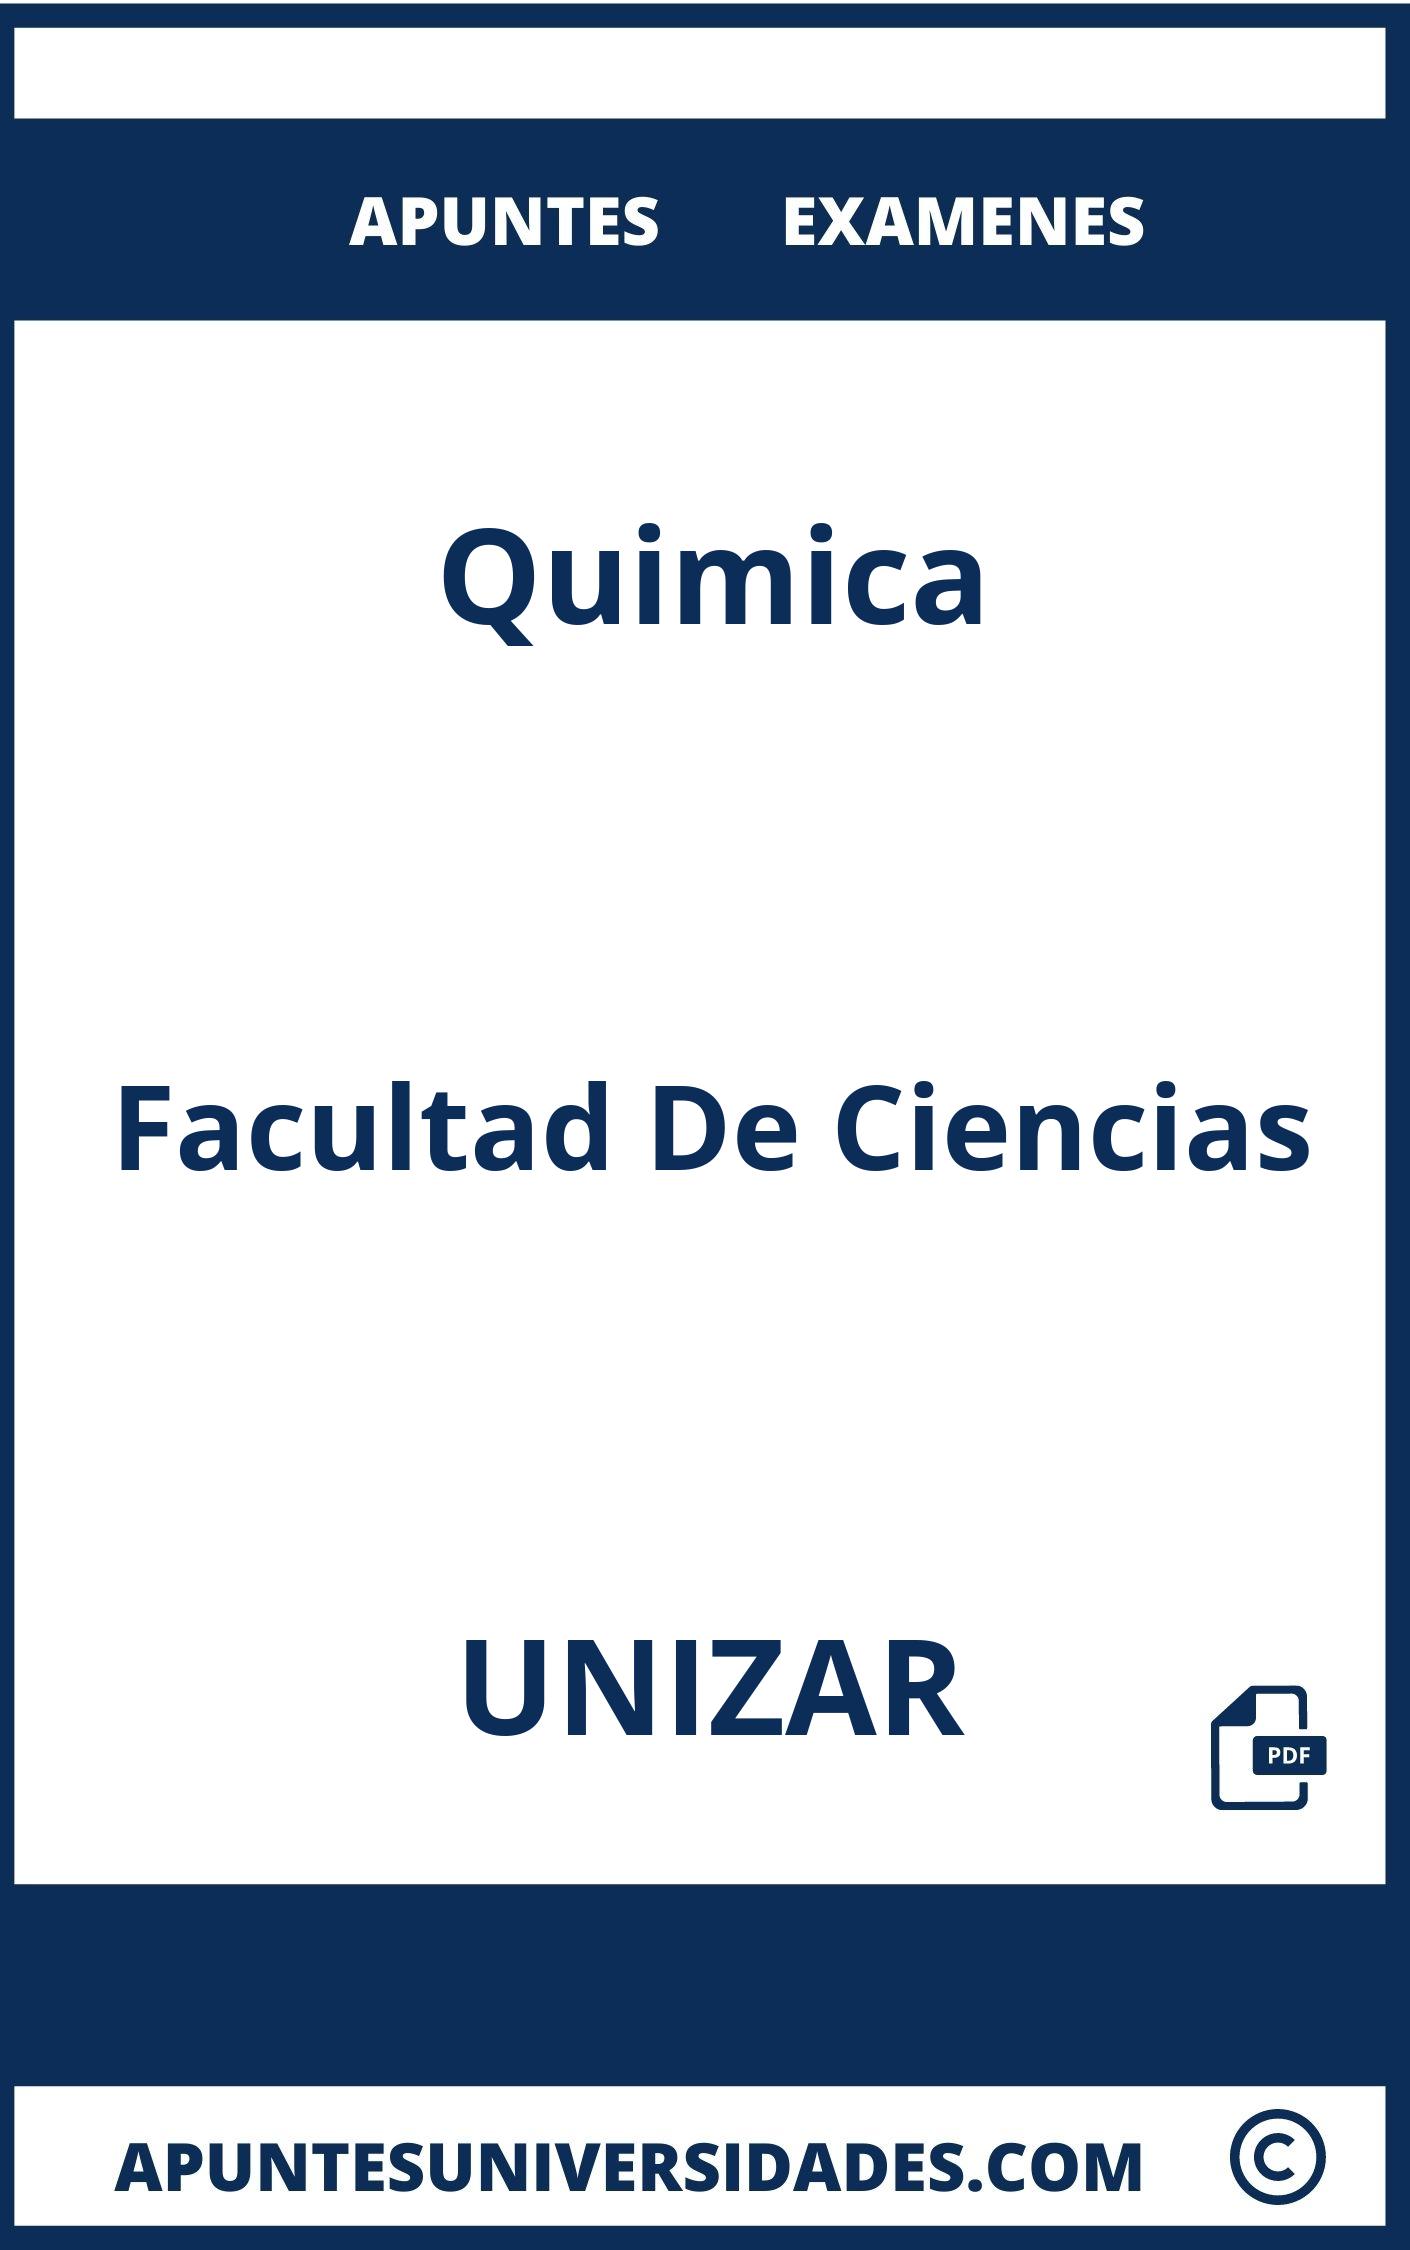 Examenes y Apuntes de Quimica UNIZAR